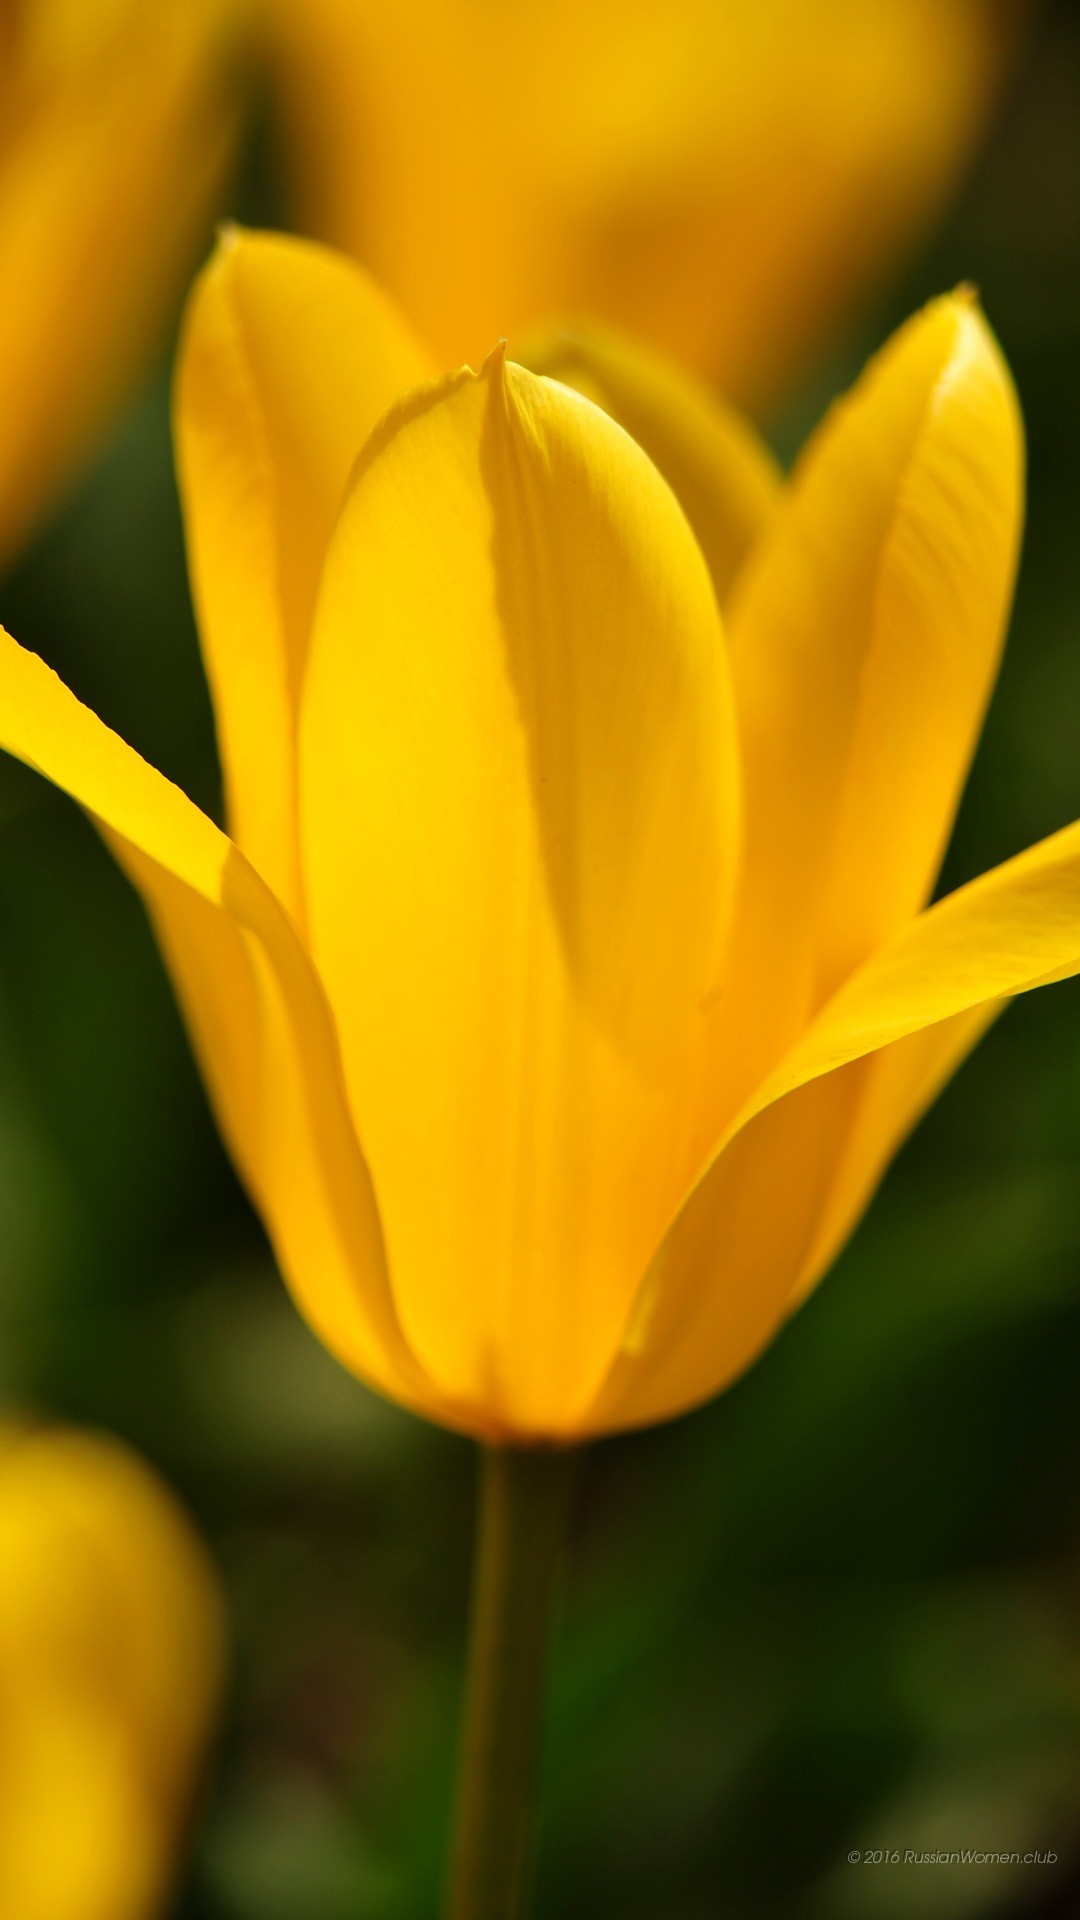 asus zenfone 2 láser fondo de pantalla,flor,planta floreciendo,pétalo,amarillo,tulipán